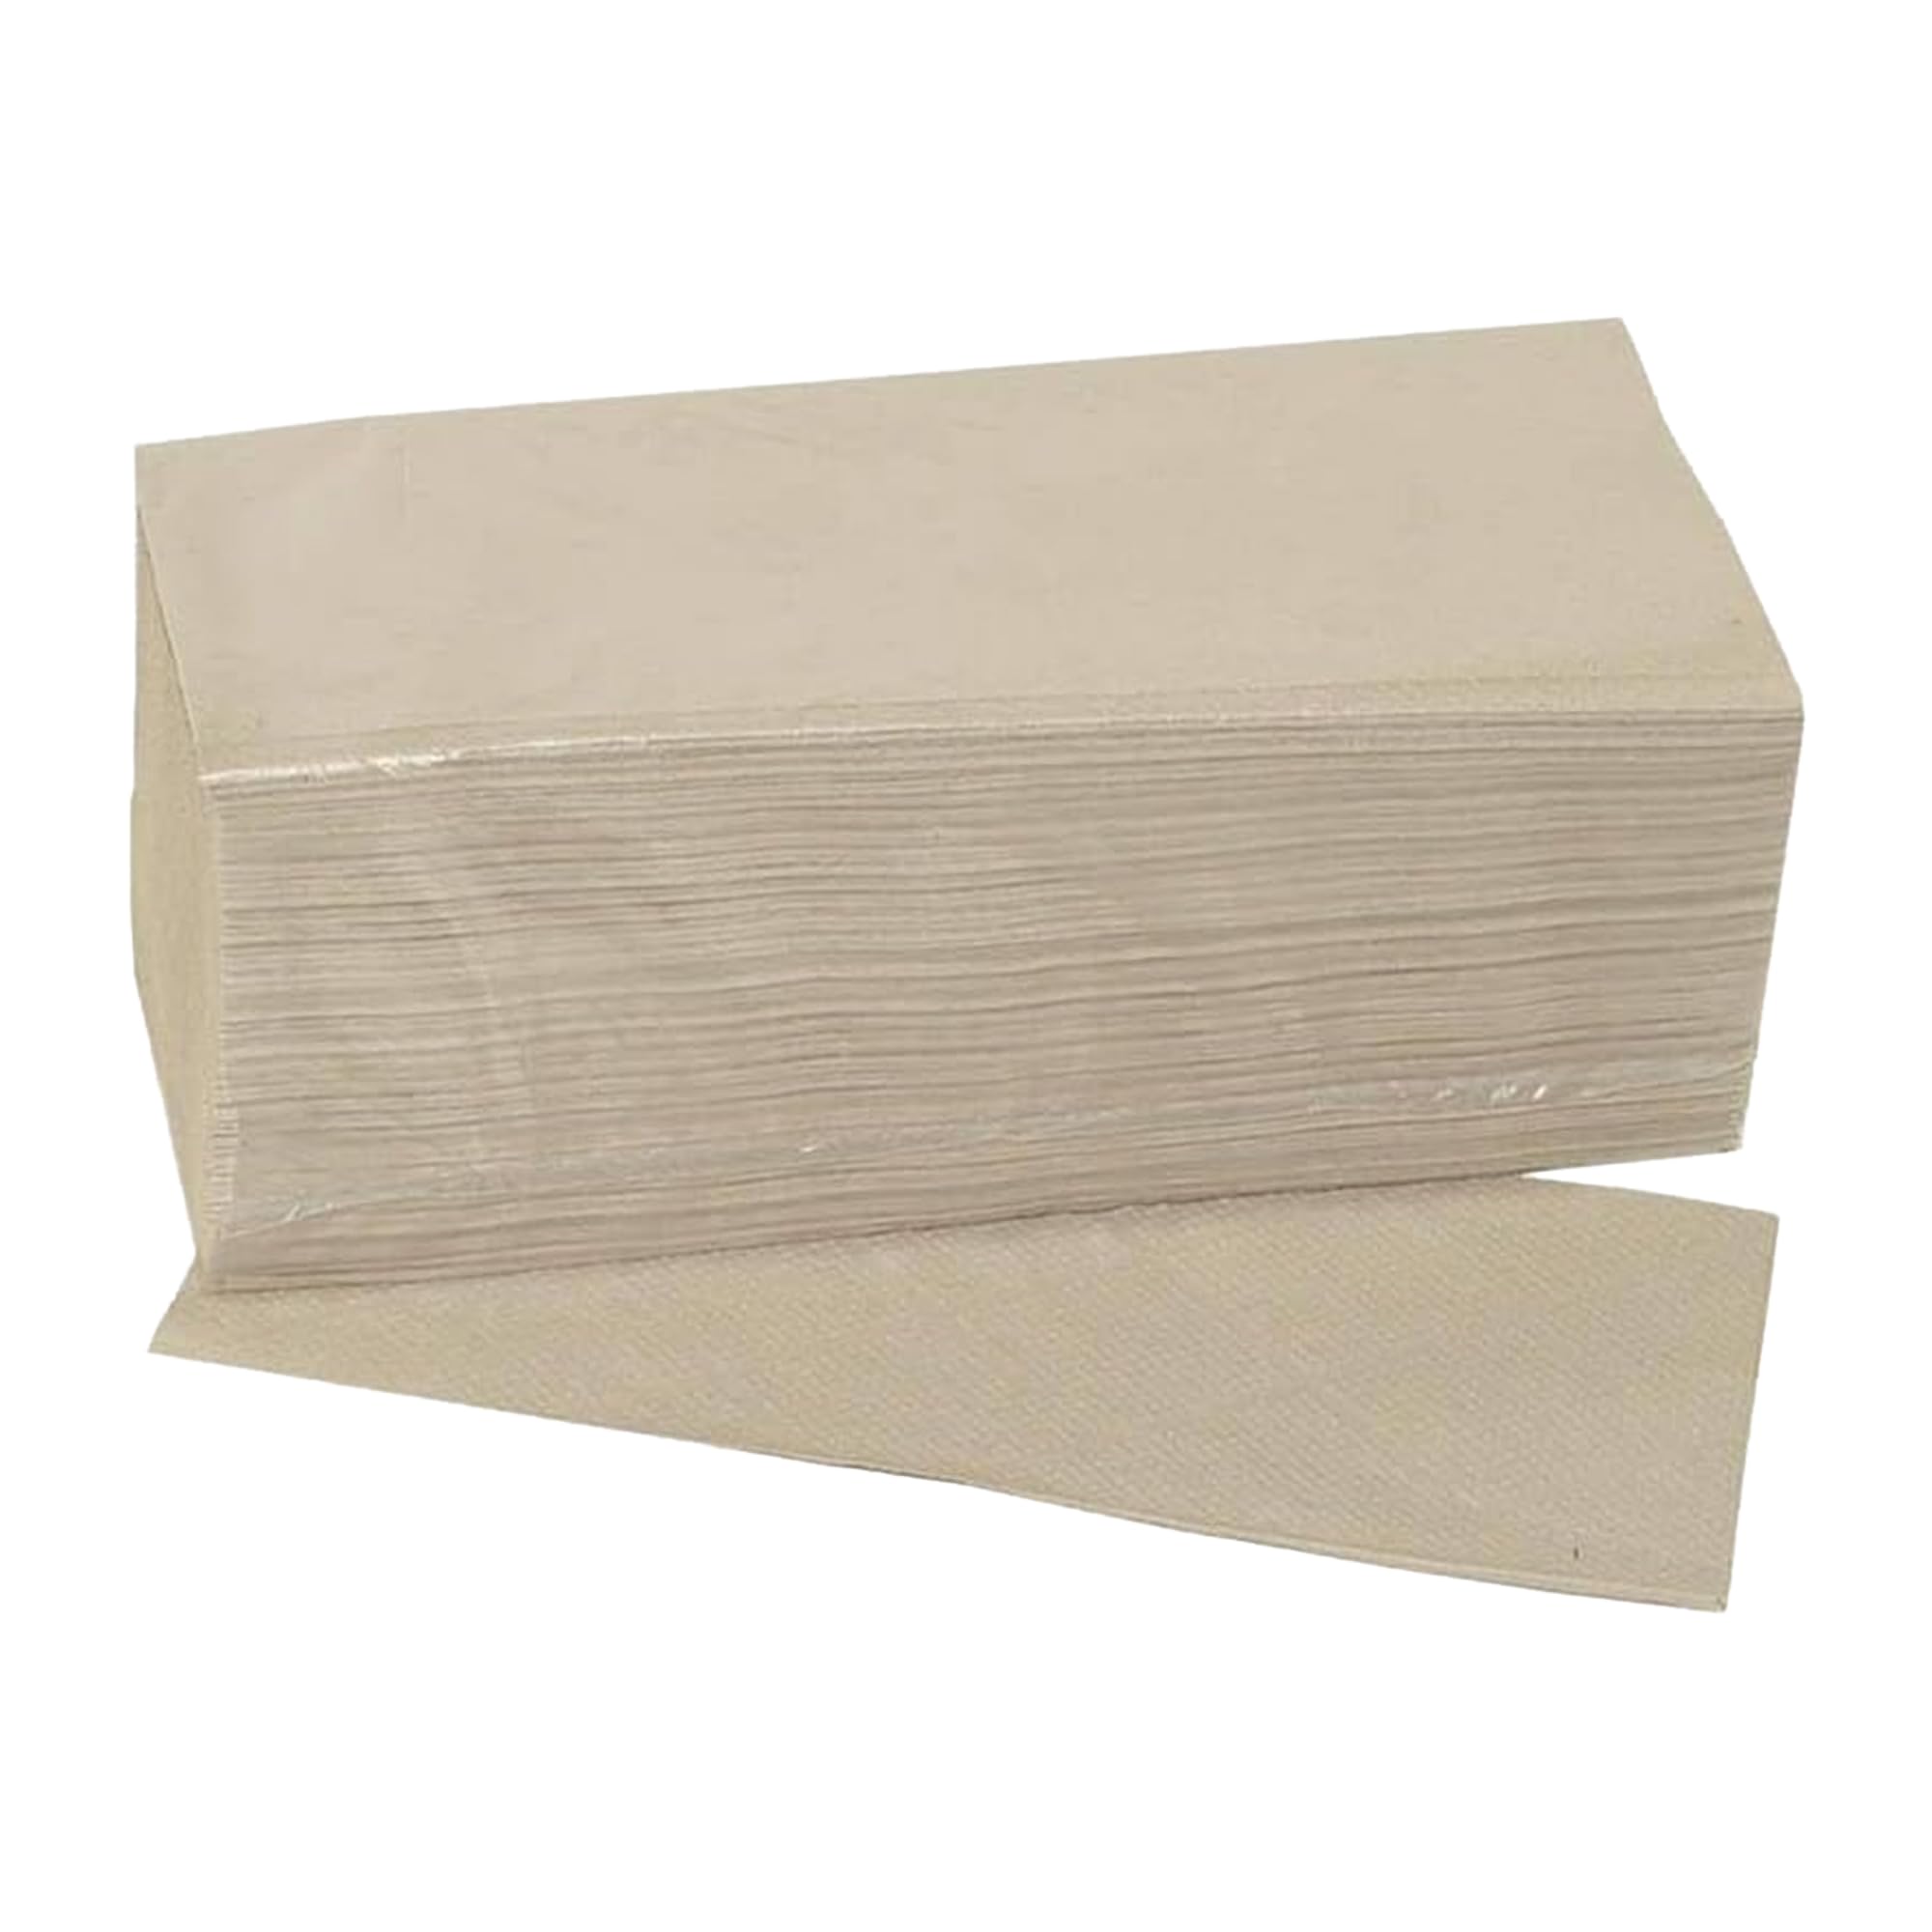 Wisch-Star Papierhandtücher 2x 5000 Blatt, Handtuchpapier, 1-lagig natur, Papier für Papierhandtuchspender, 24,5 x 21 cm, EU-Ecolabel